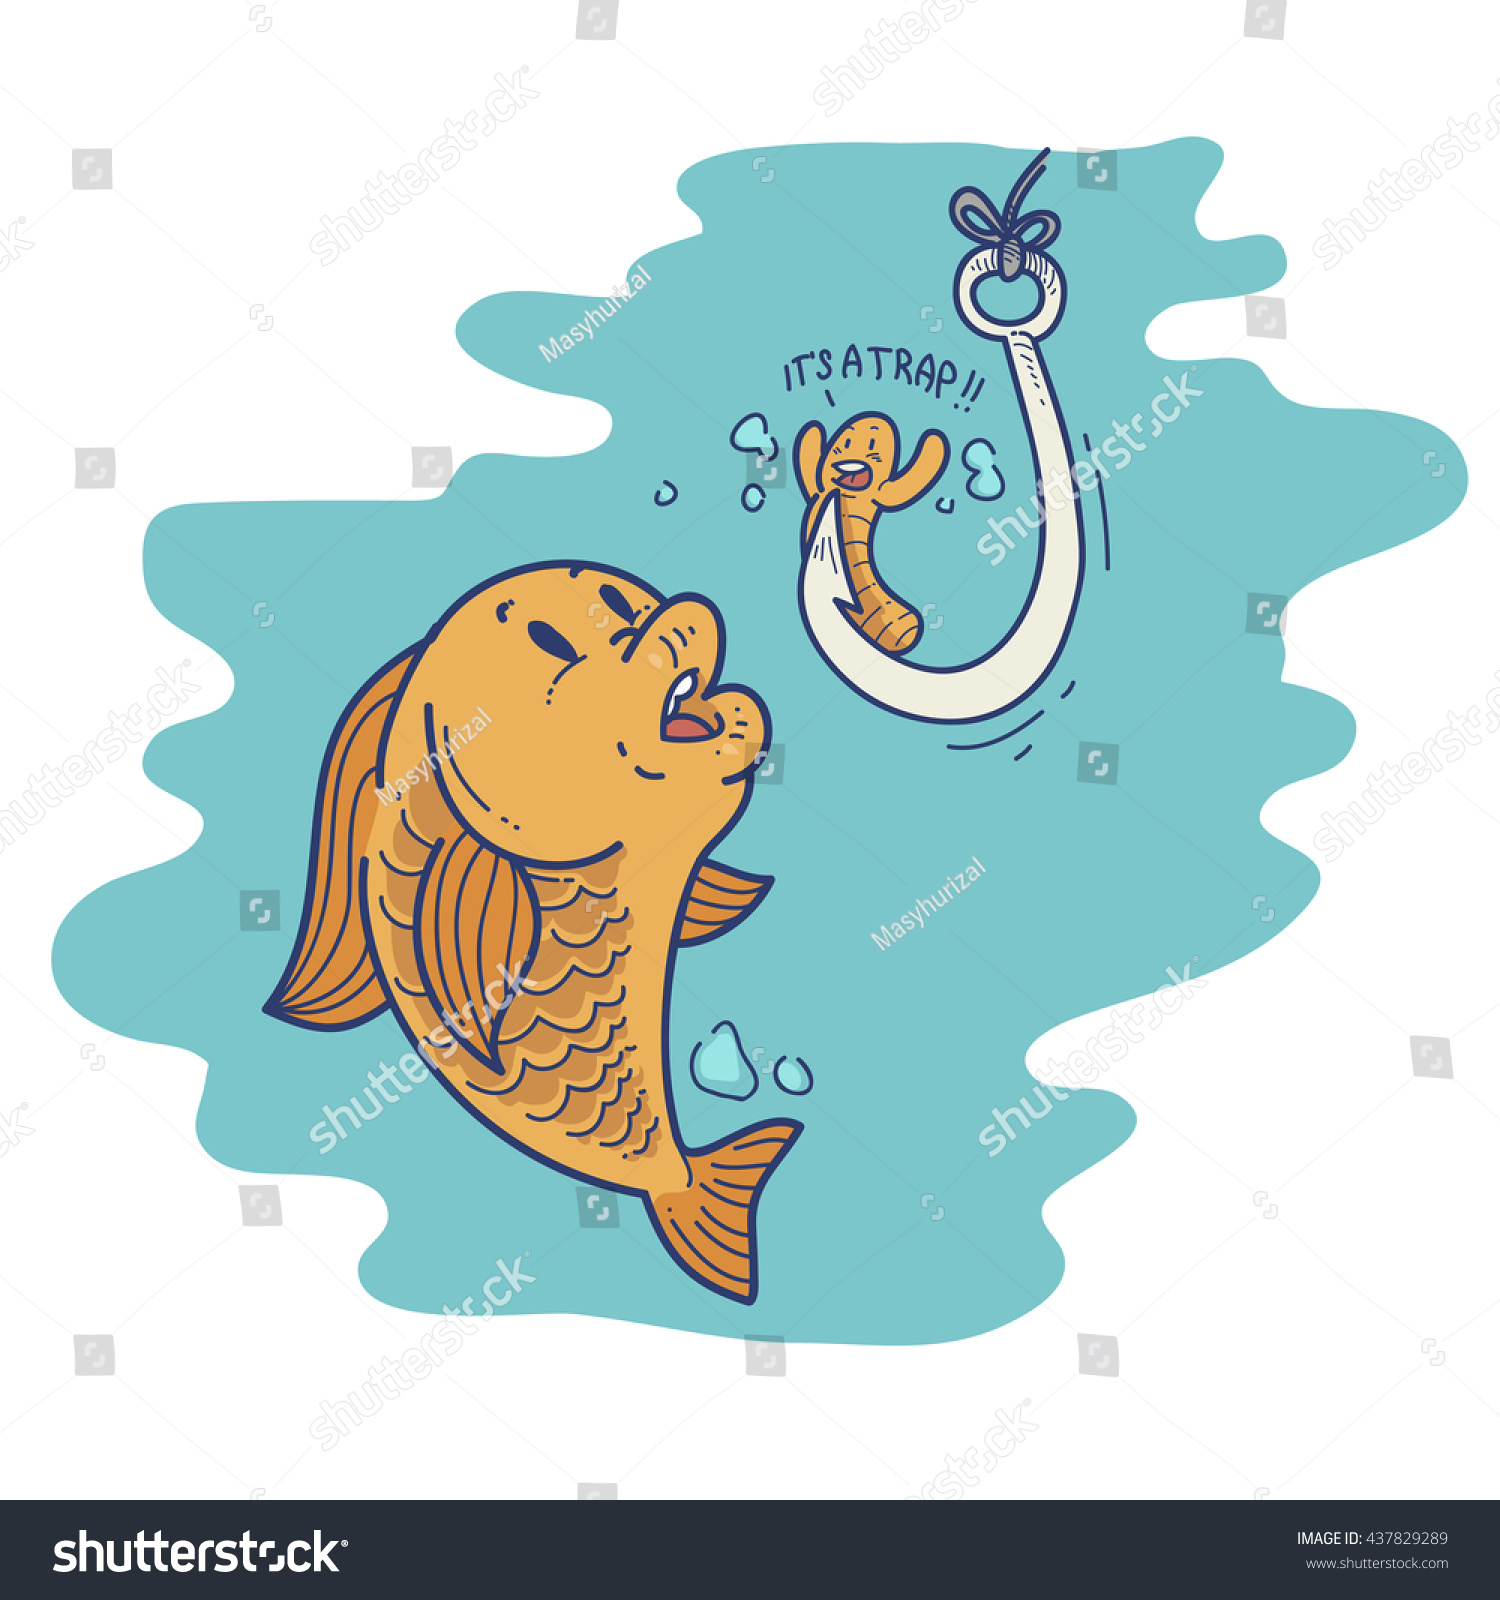 Download Cartoon Fishing Bait Stock Vector 437829289 - Shutterstock